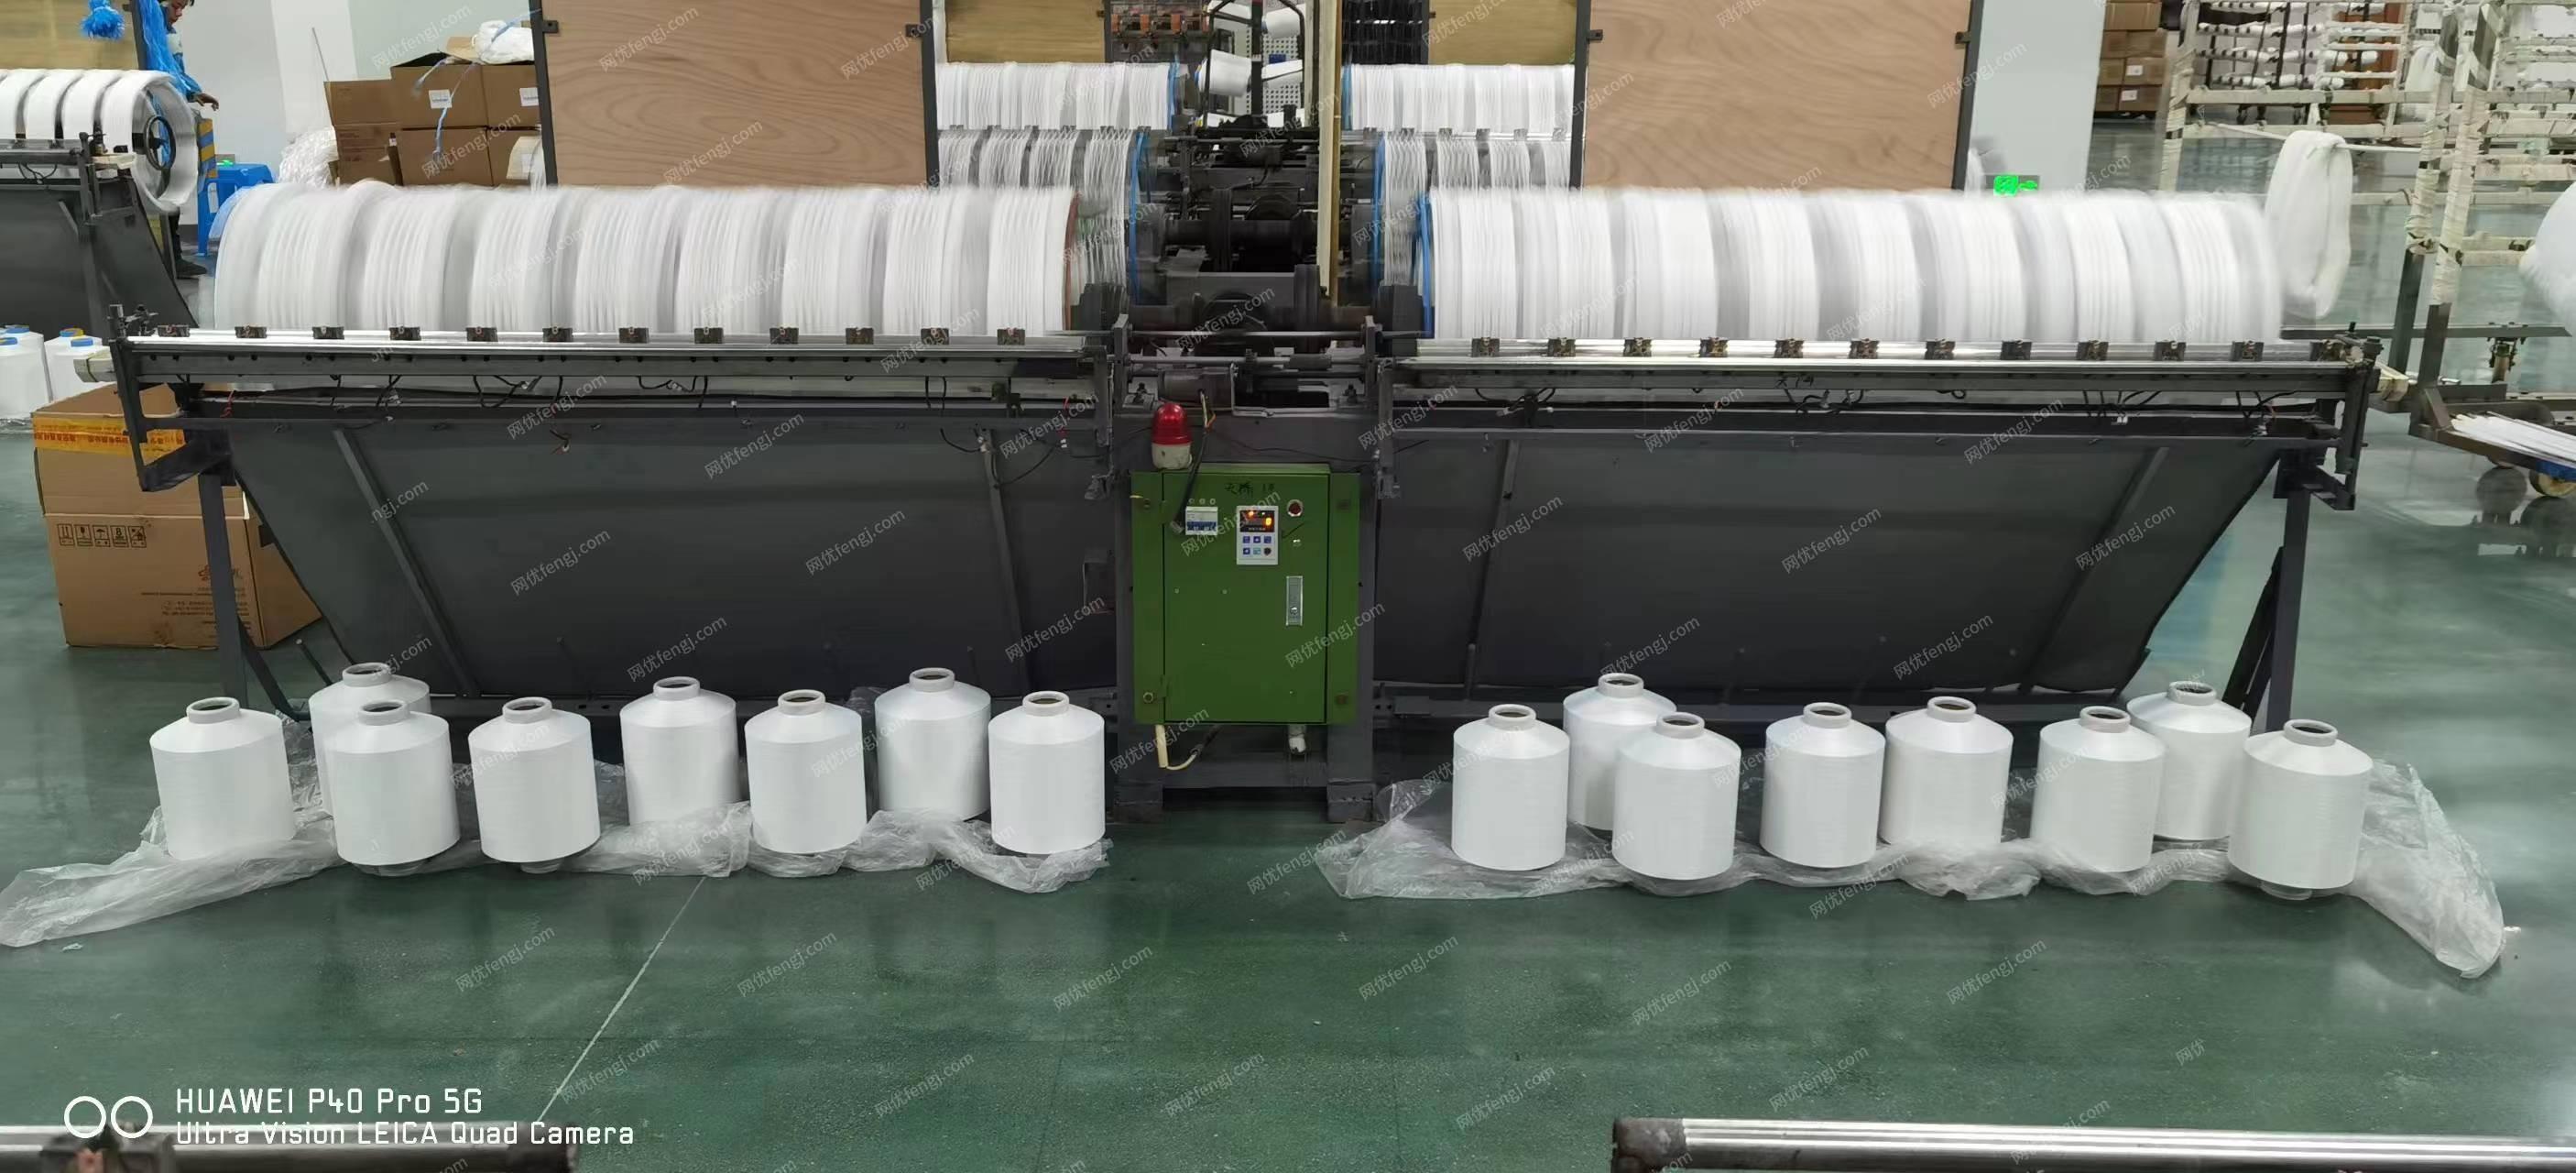 工厂转型处理摇绞机20台、泰和40锭络筒机10台（400个定位）、大小阀门很多、630变压器+配电柜、吨桶、储罐